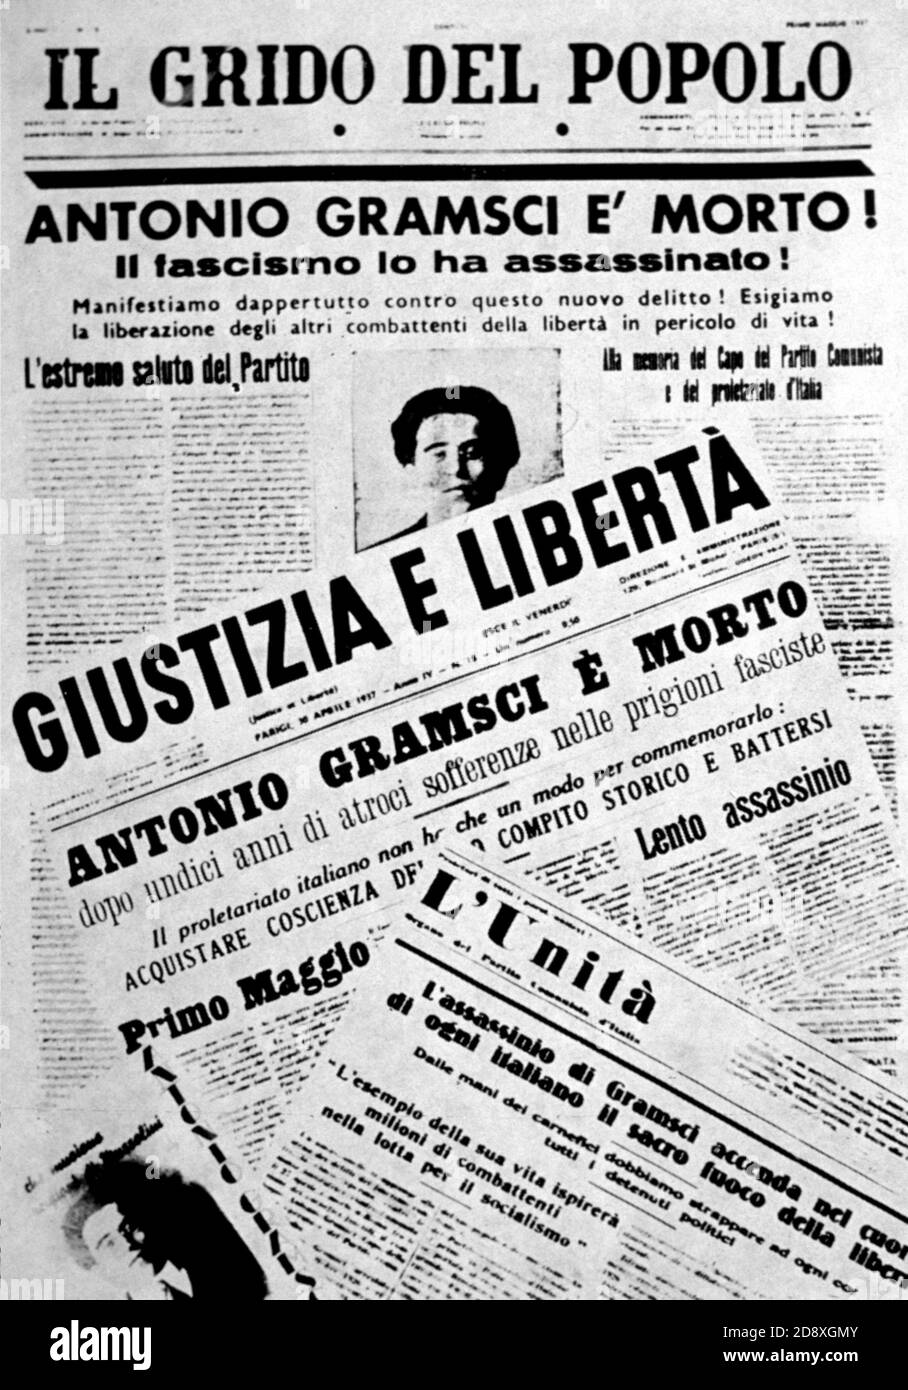 1937 ca. : ANTONIO GRAMSCI ( Ales , Oristano 1891 - Roma 1937 ) italienischer Intellektueller, Schriftsteller und Kommunist - PARTITO COMUNISTA ITALIANO - PCI - POLITICO - POLITIKER - POLITIK - POLITIK - Objektiv - occhiali da vista - GESCHICHTE - FOTO STORICHE ---- Archivio GBB Stockfoto